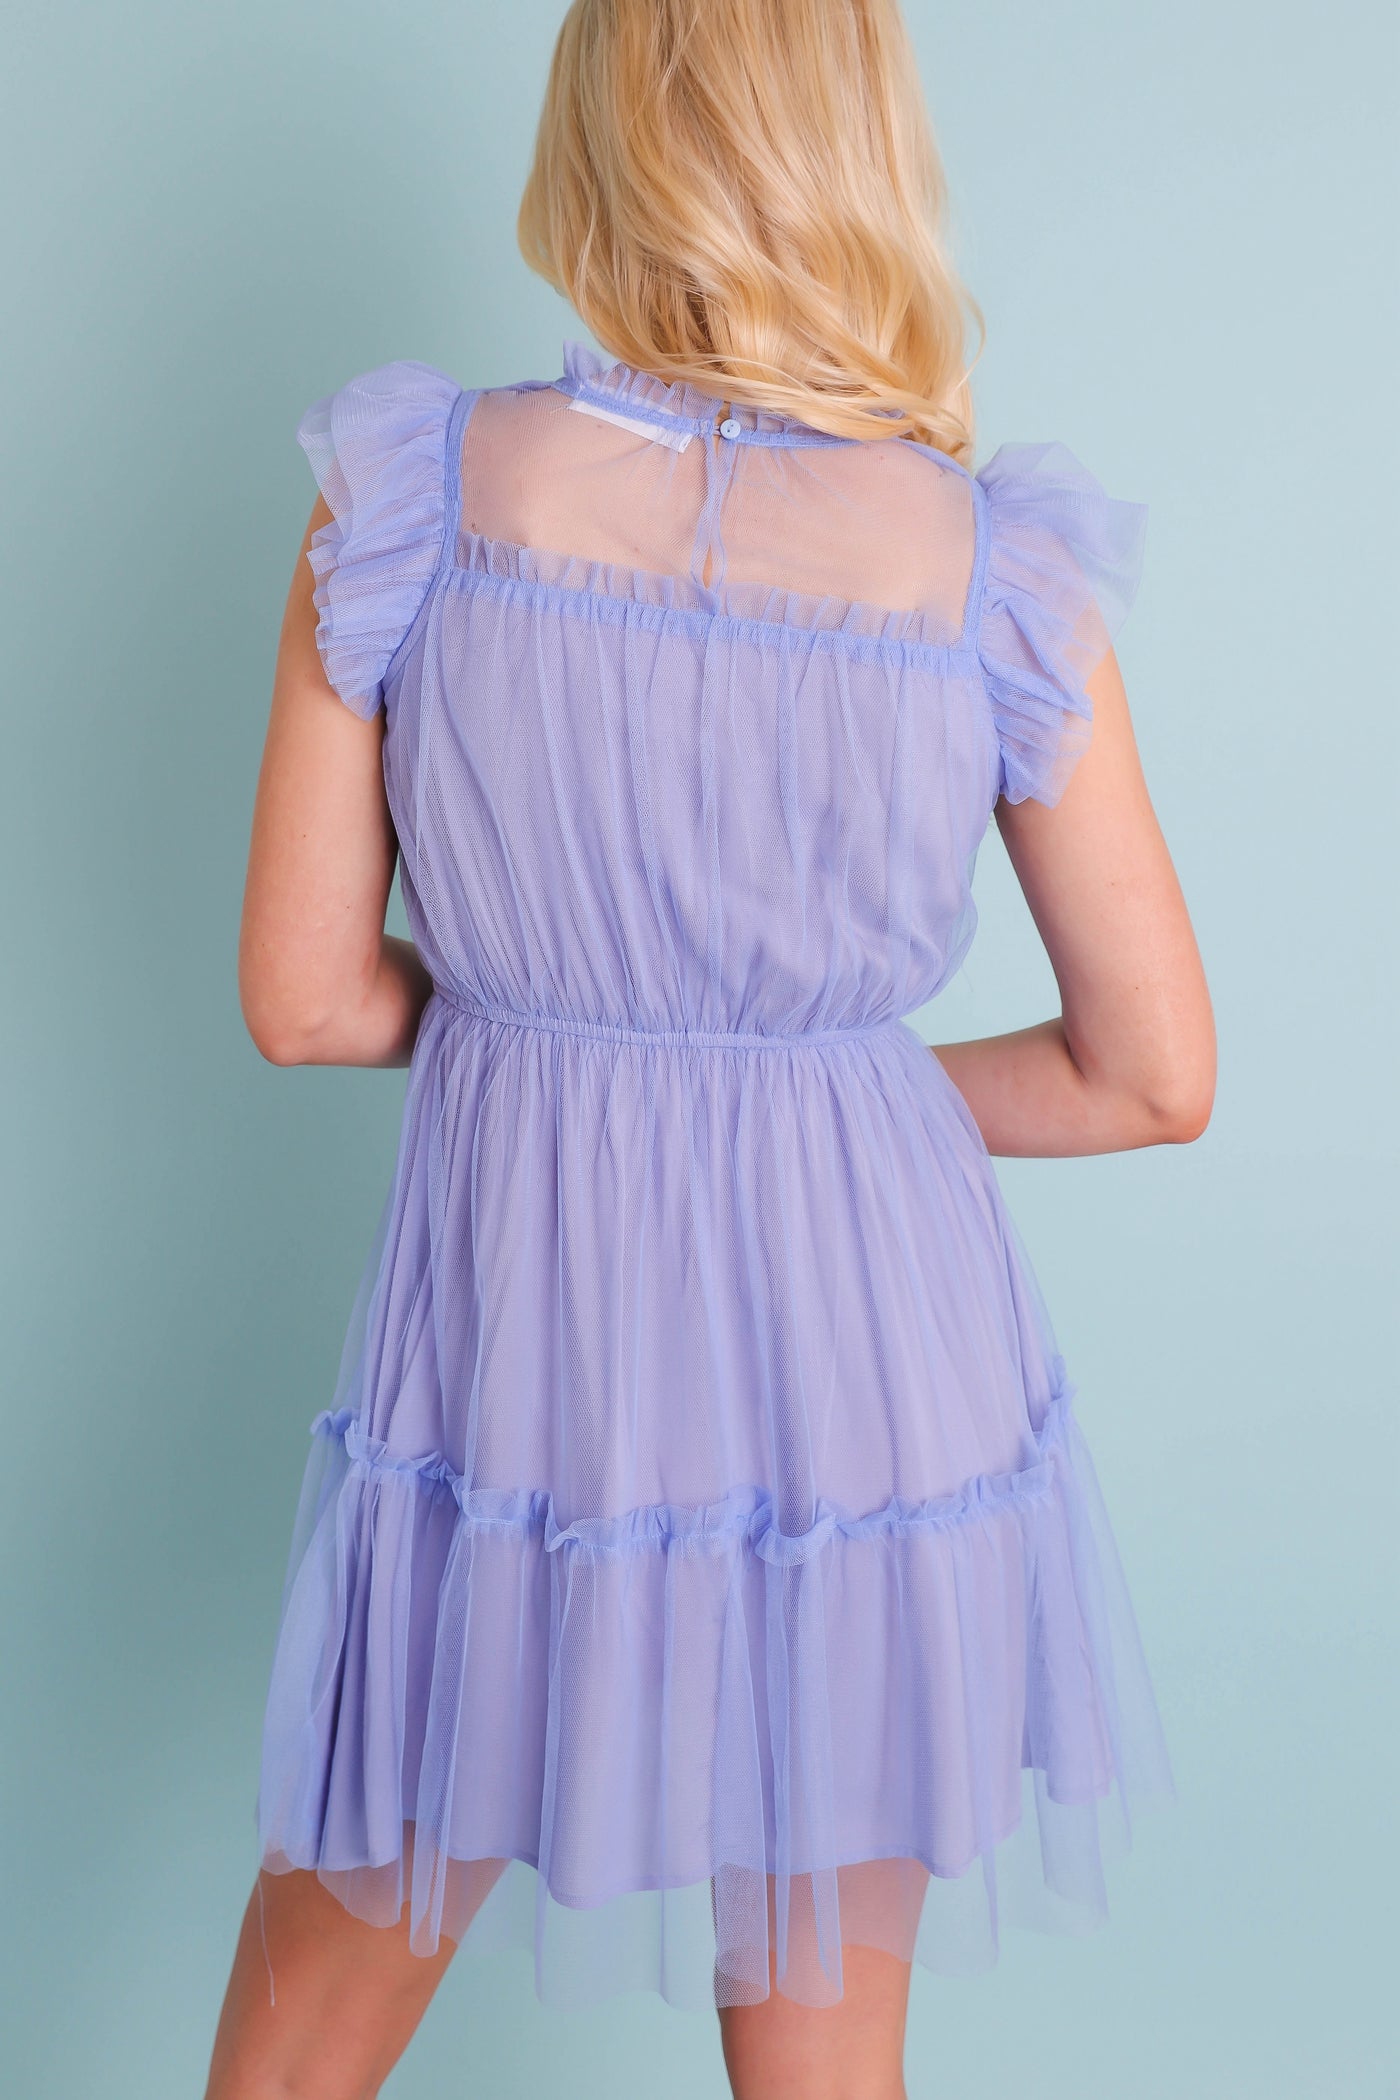 Fun Tulle Dress- Purple Tulle Dress- Preppy Women's Dresses- &Merci Dress